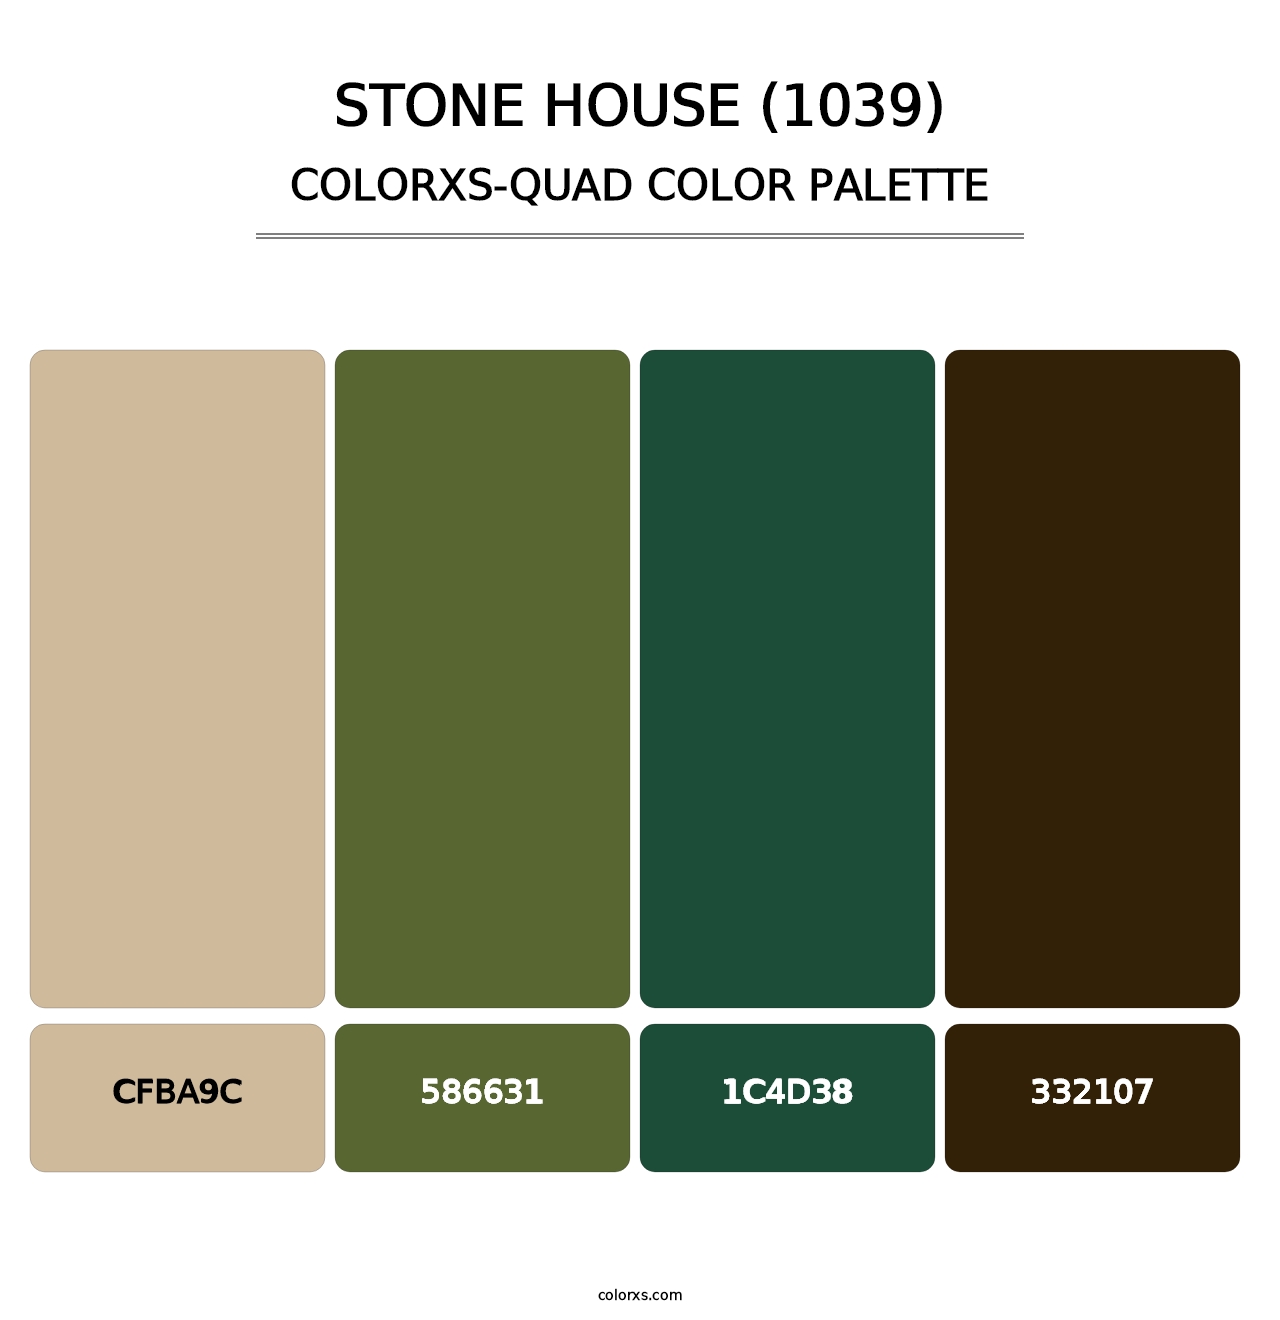 Stone House (1039) - Colorxs Quad Palette